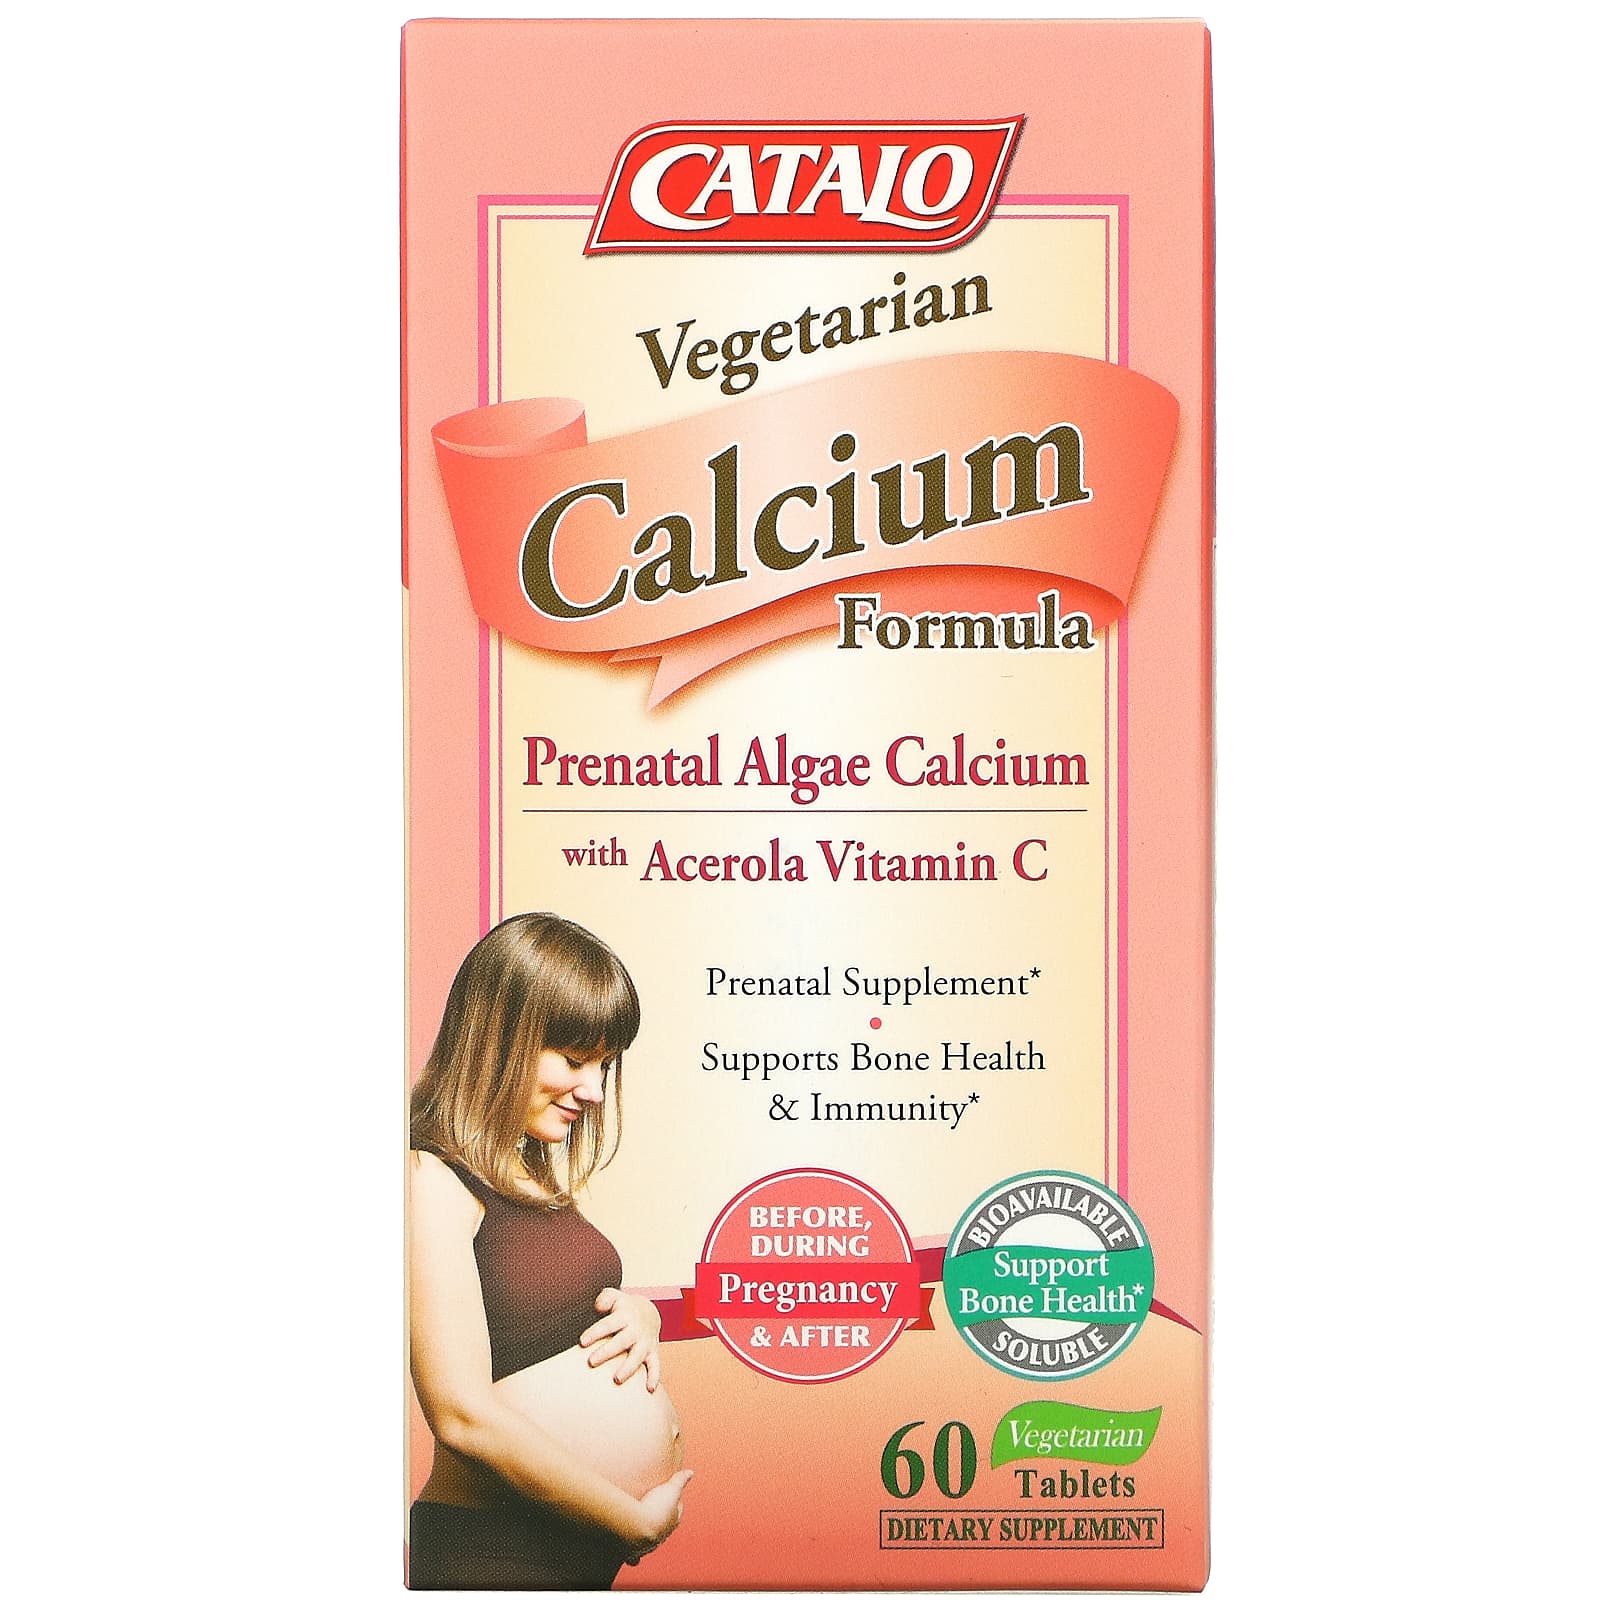 вегетарианская формула с кальцием, кальций из пренатальных водорослей, 60 вегетарианских таблеток Catalo Naturals дгк из водорослей для беременности catalo naturals 60 мягких таблеток